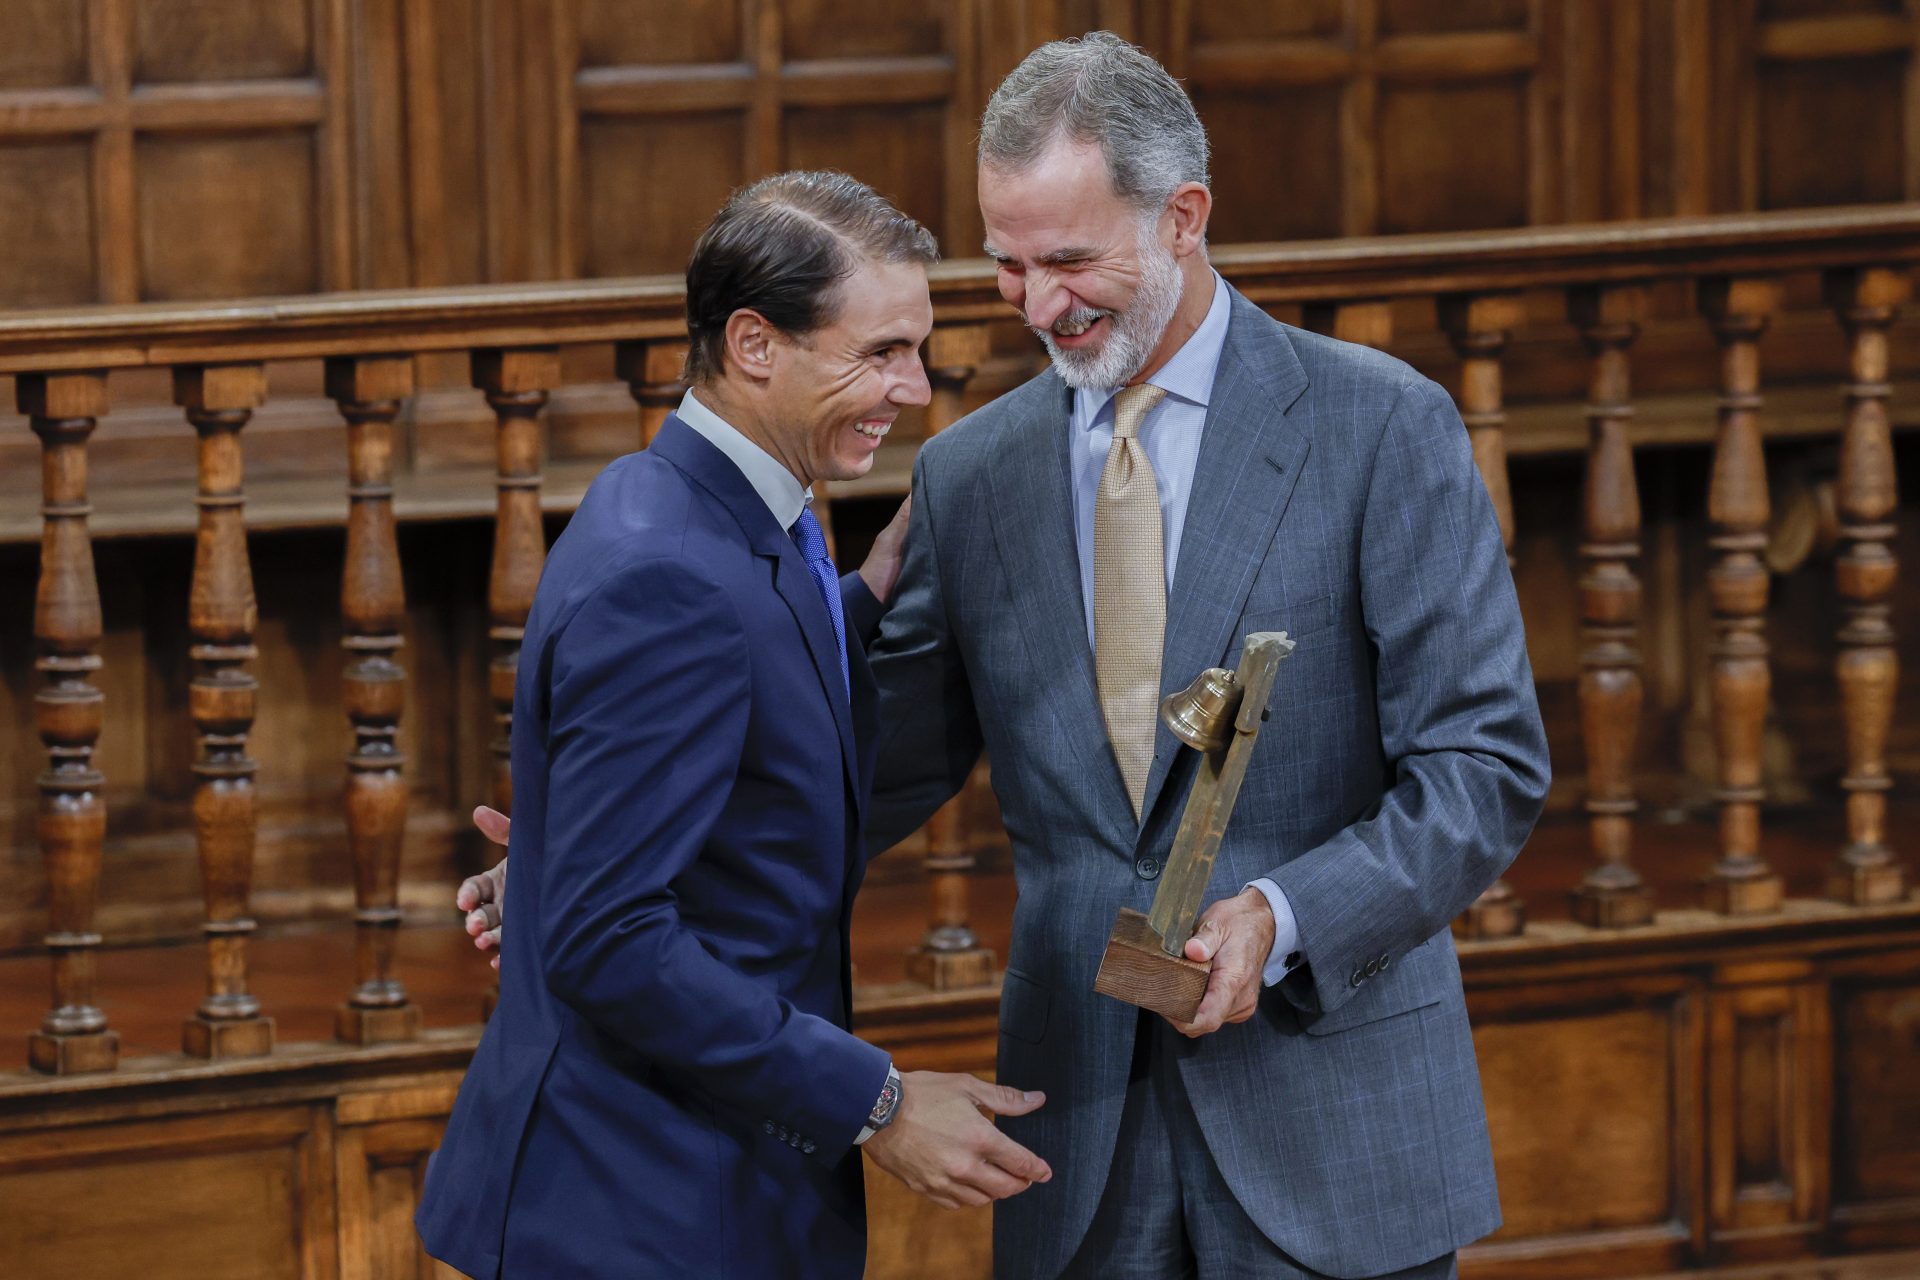 Rafael Nadal receives the Camino Real Award from King Philip VI